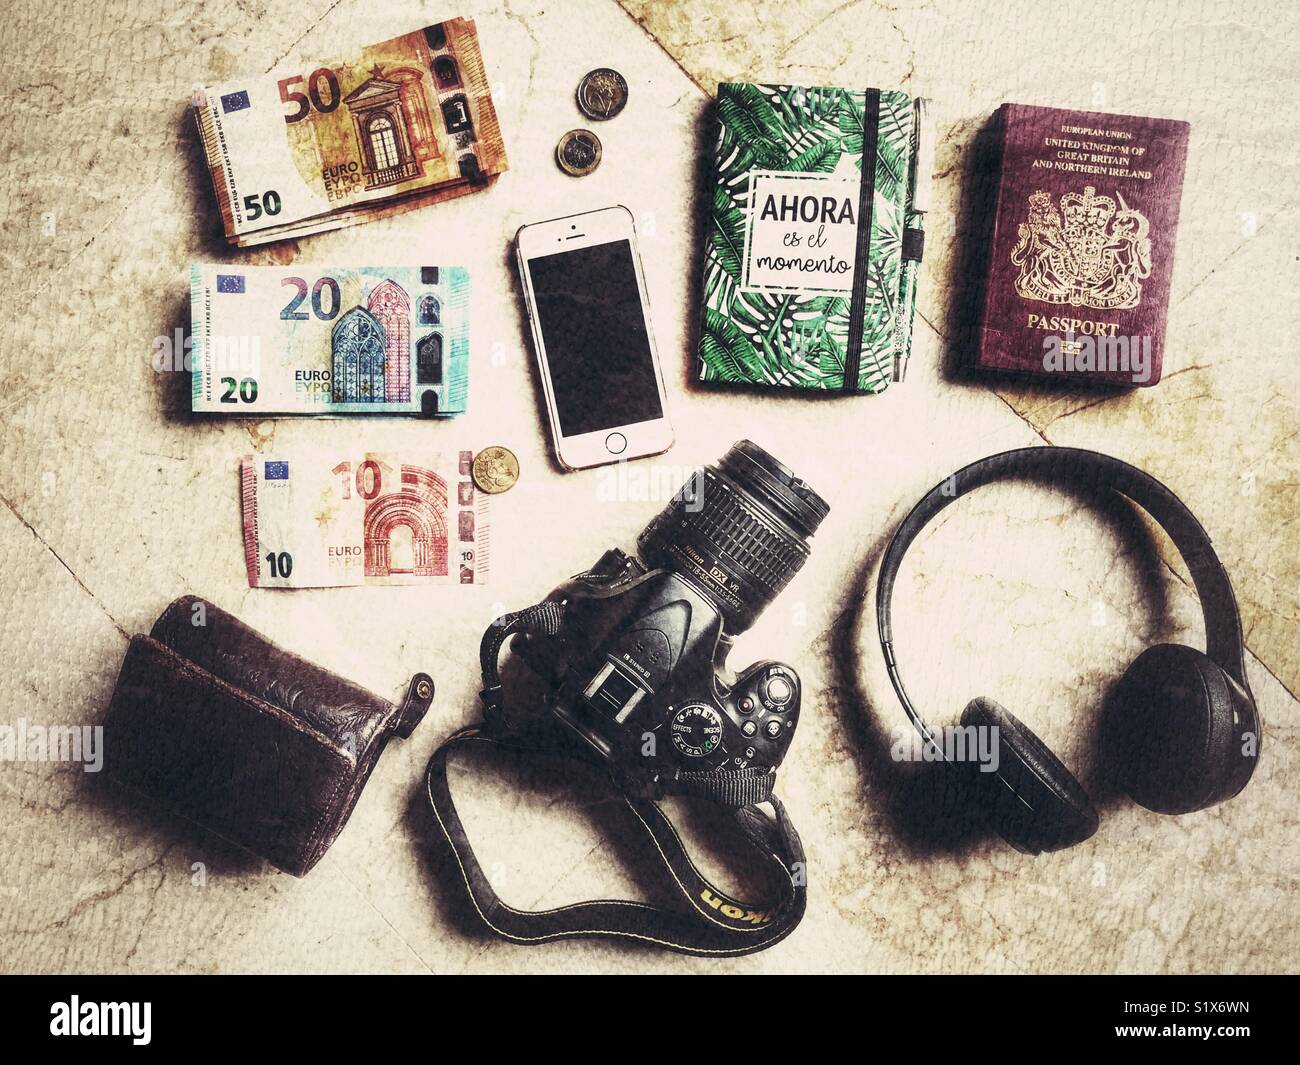 Fotografia Flatlay, articoli da viaggio inclusi portafogli, passaporti, fotocamera reflex digitale, cuffie Beat, notebook, iPhone e euro. Foto Stock